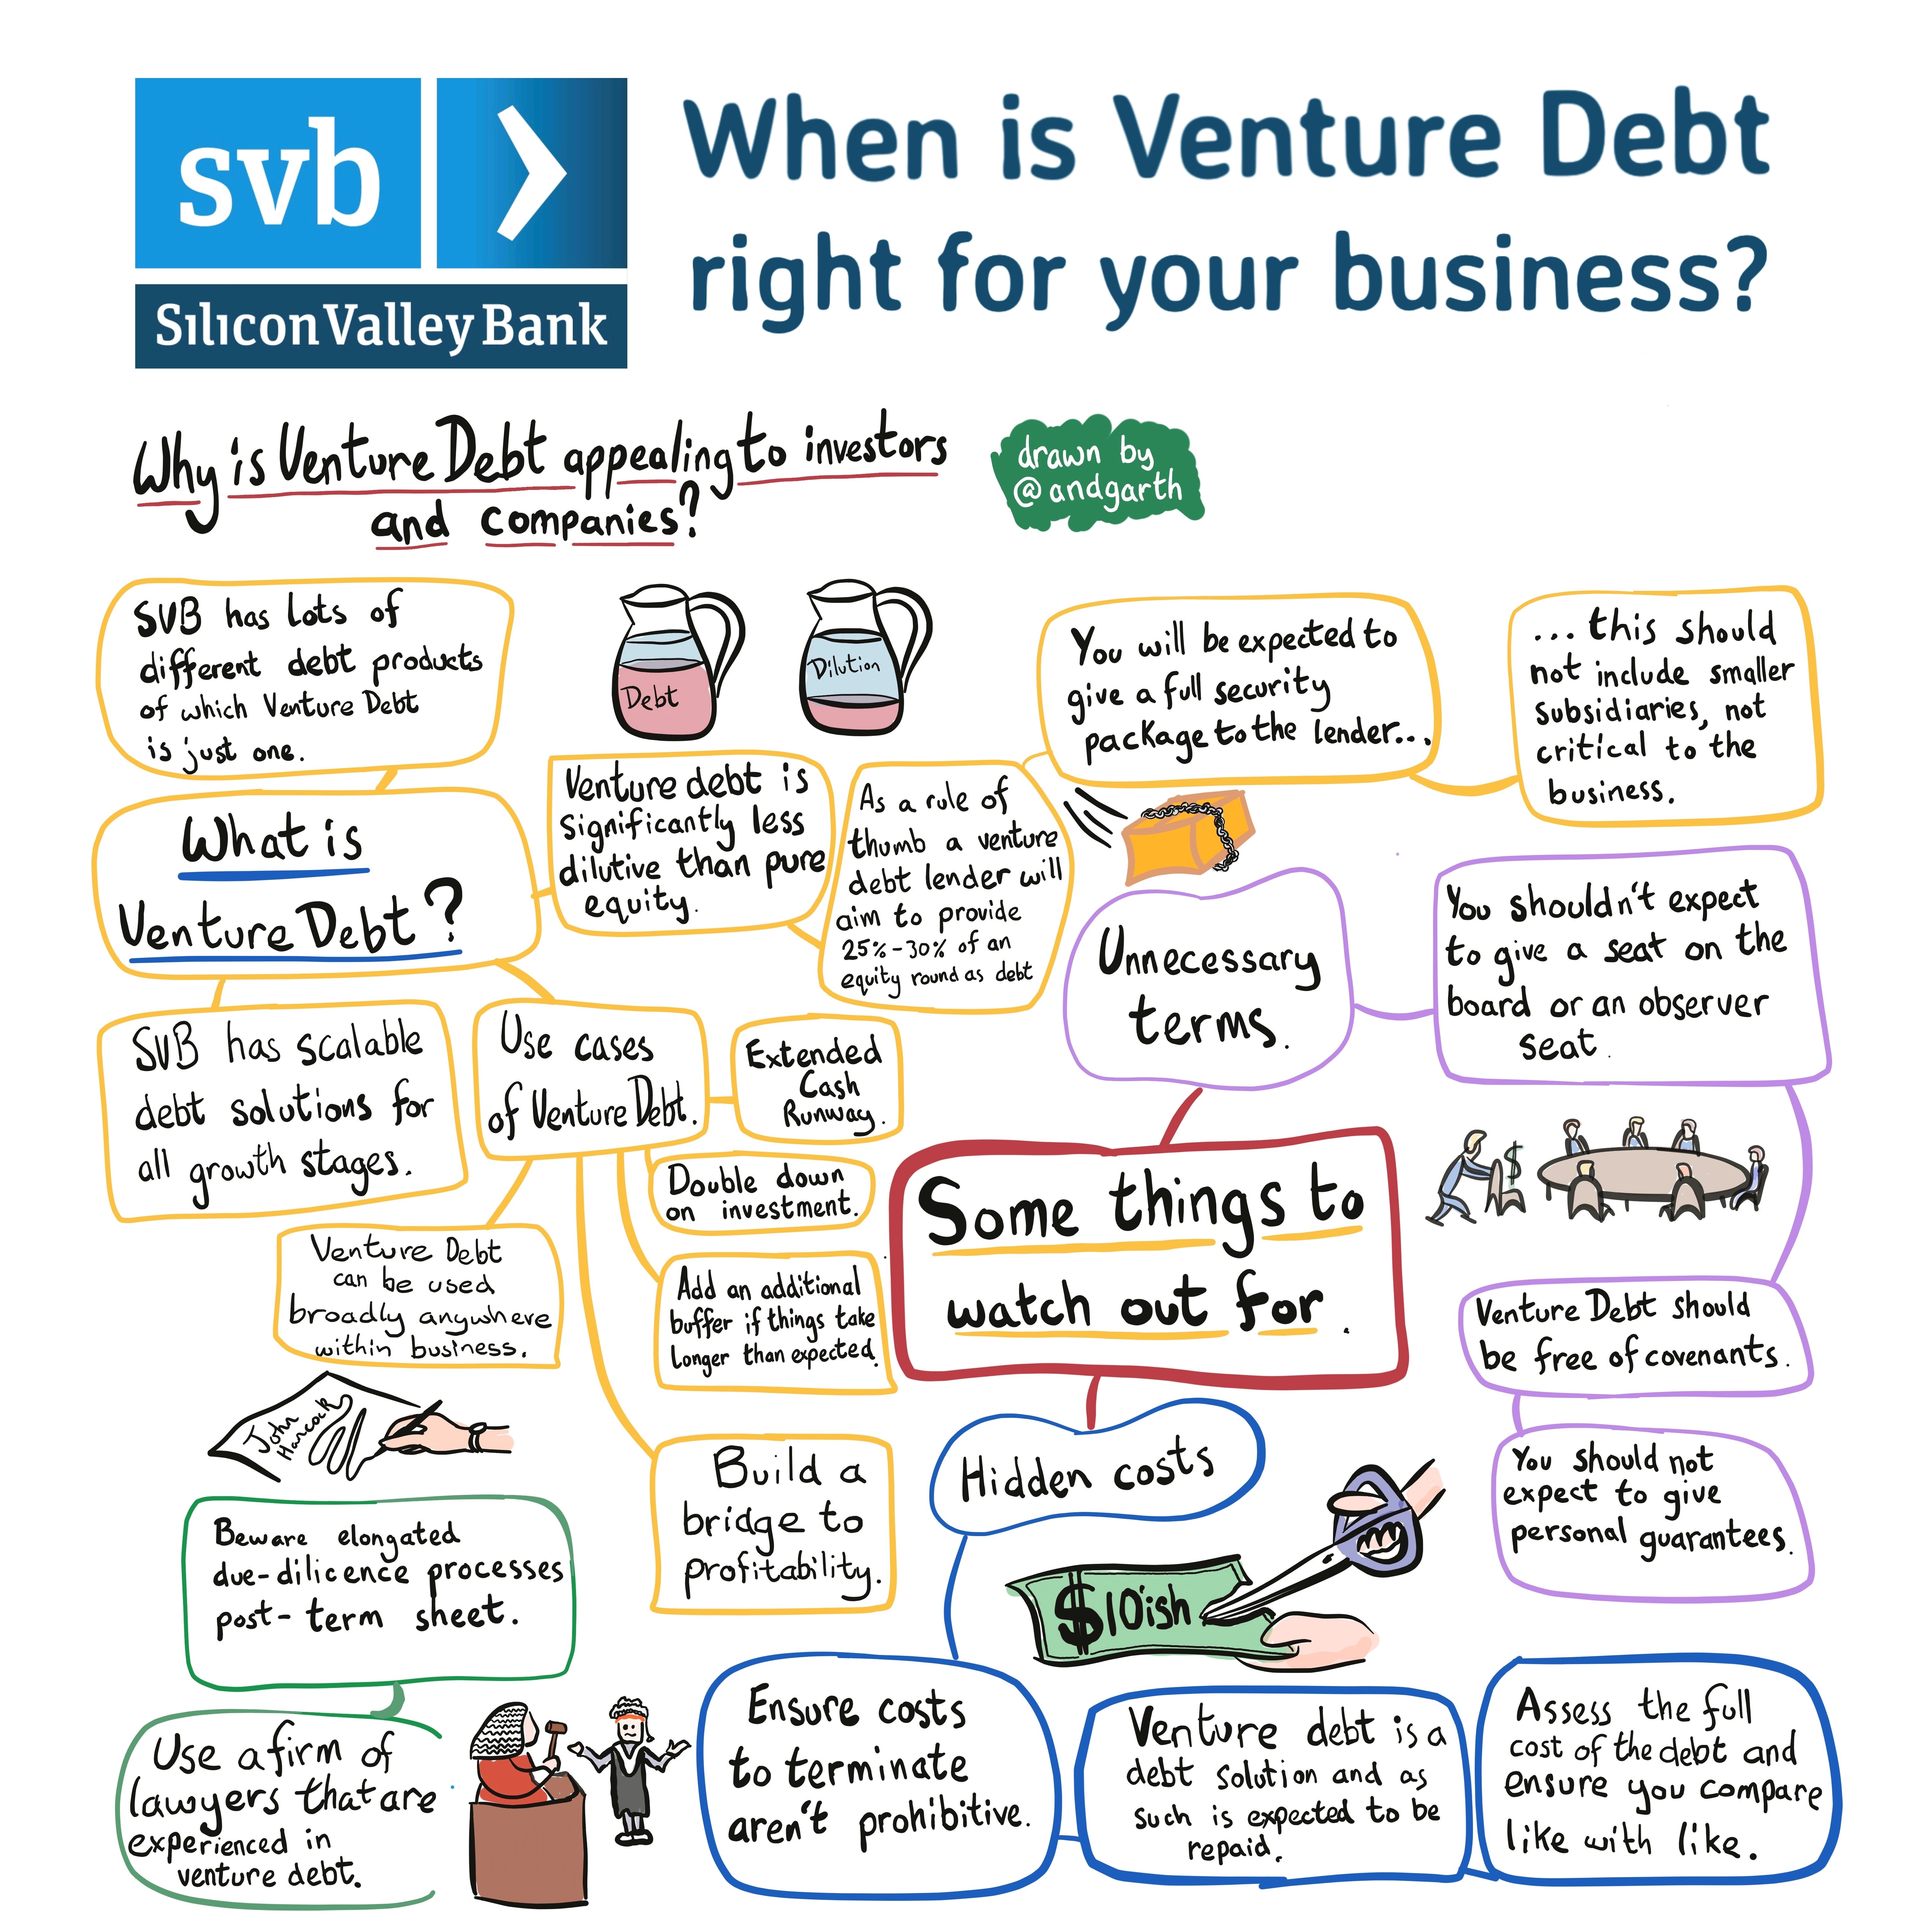 When to refinance venture debt?